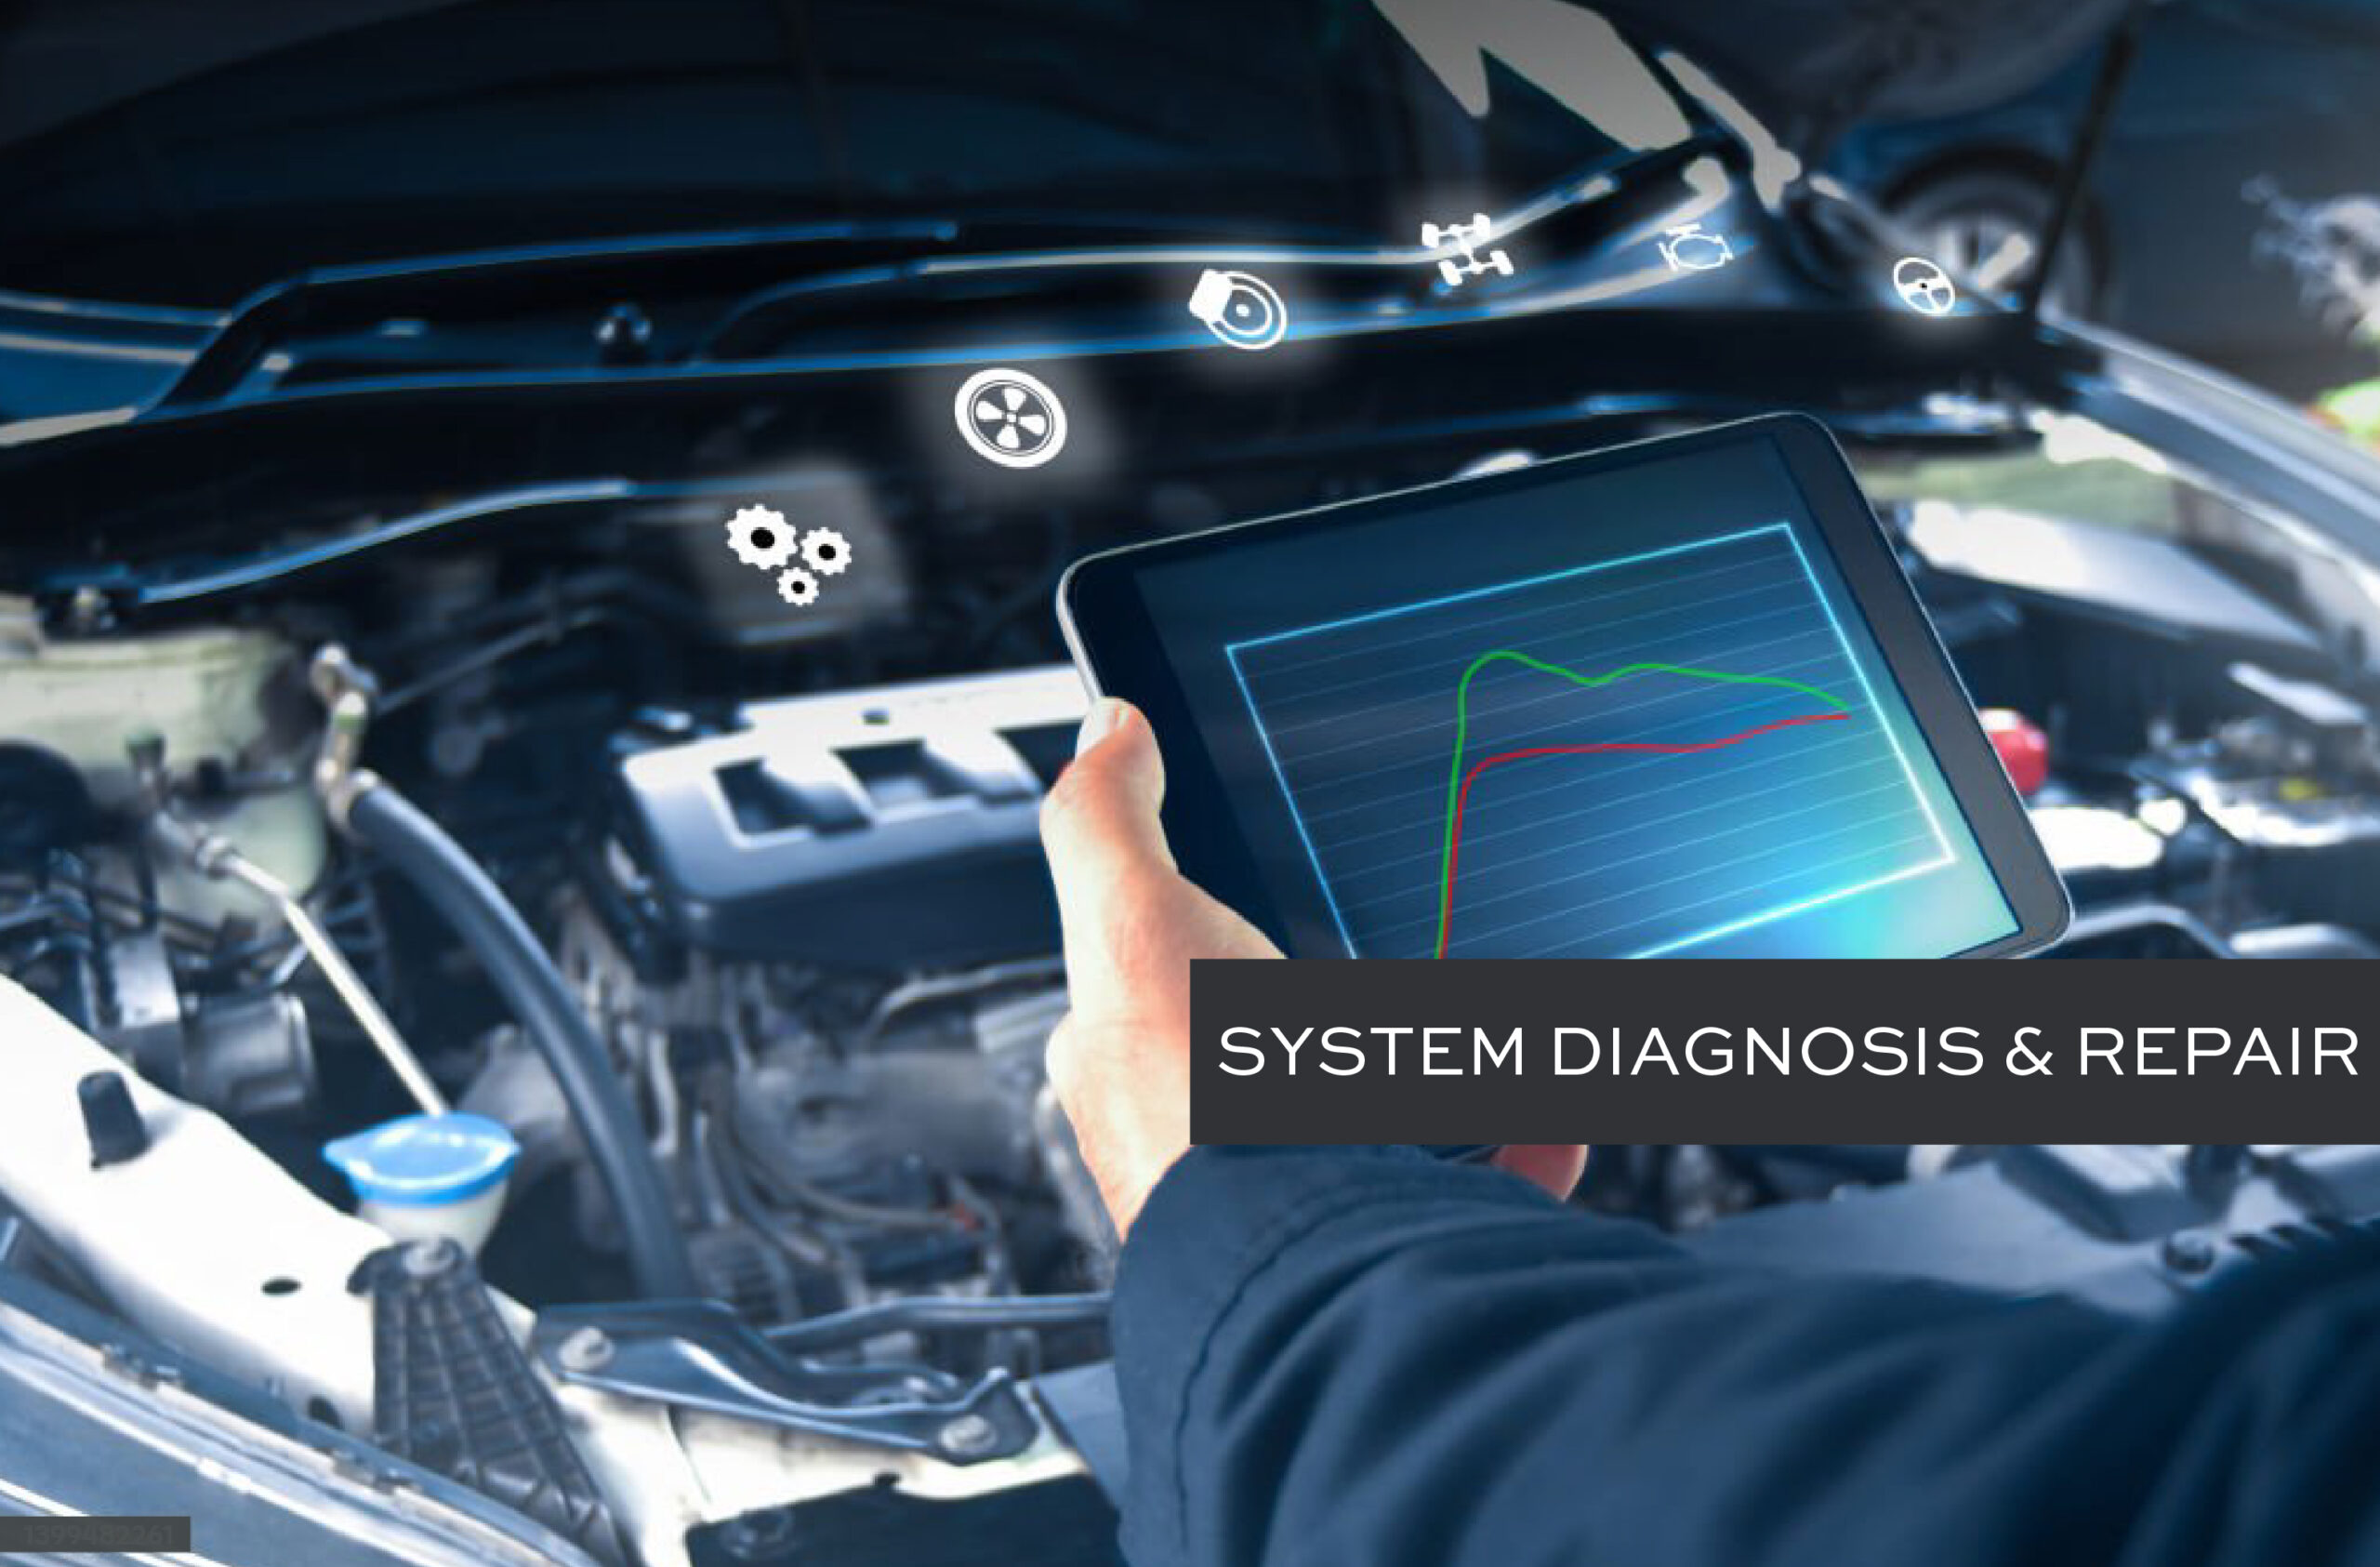 System Diagnosis & Repair